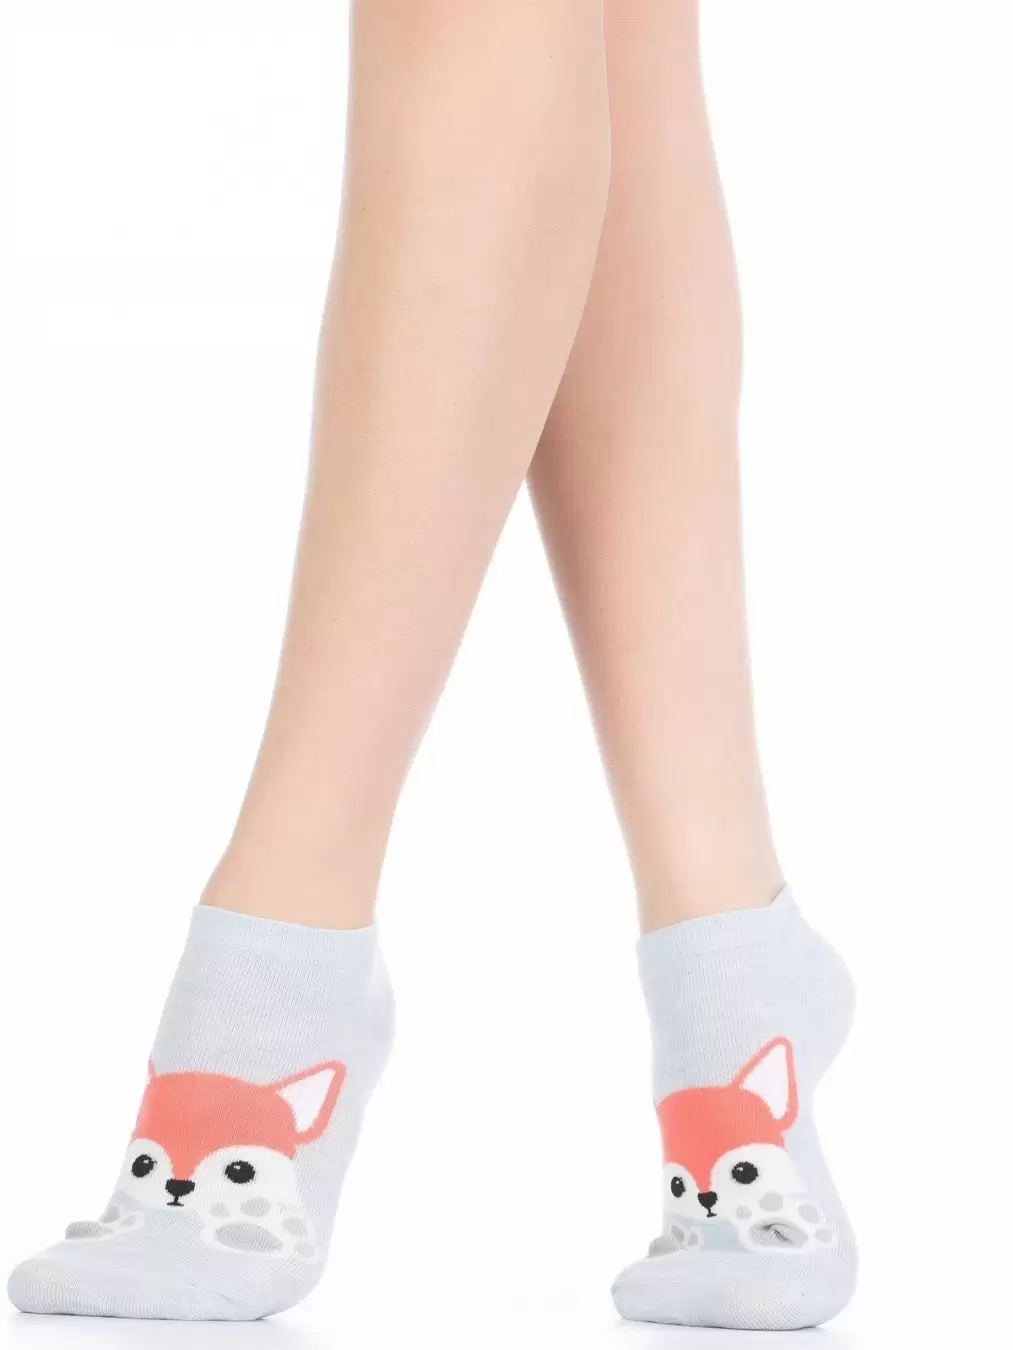 Носки детские Зверушки, размер 22-24 (размер обуви 35-38), цвет МИКС GS-164